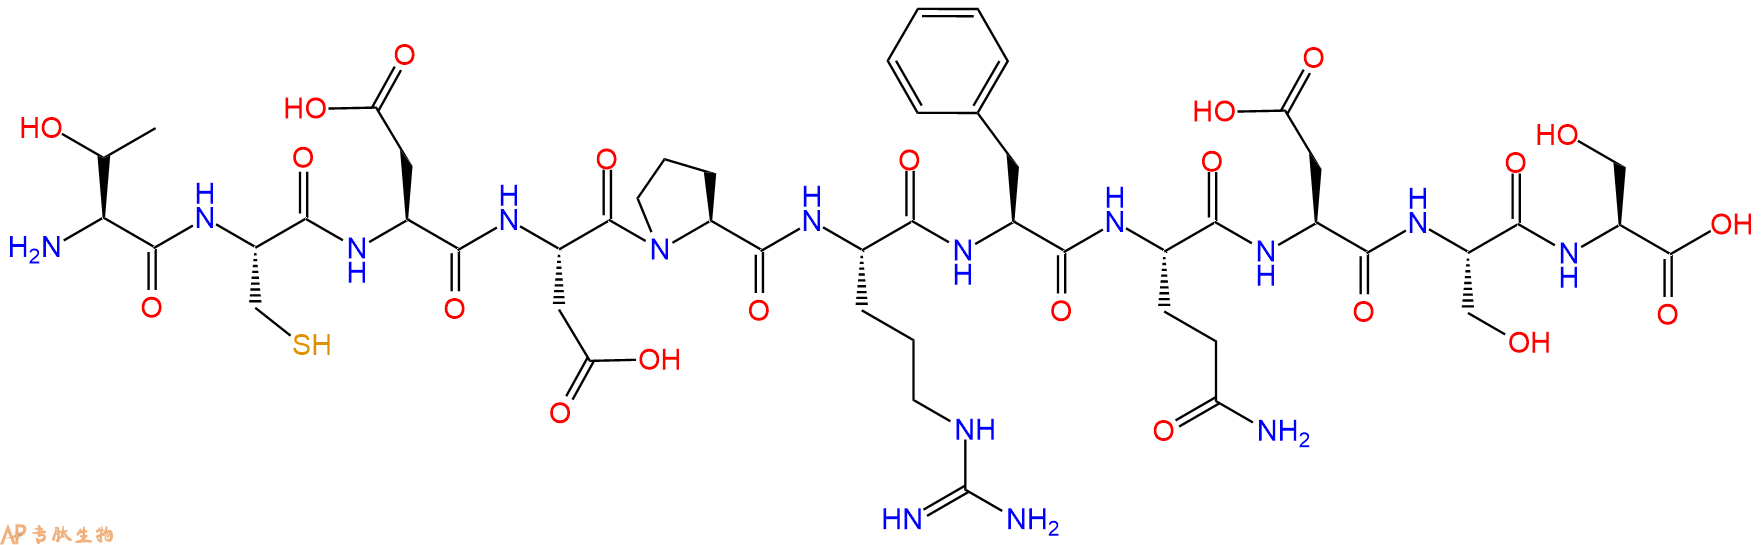 专肽生物产品ChorionicGonadotropin-β(109-119)amide(human)165174-59-4